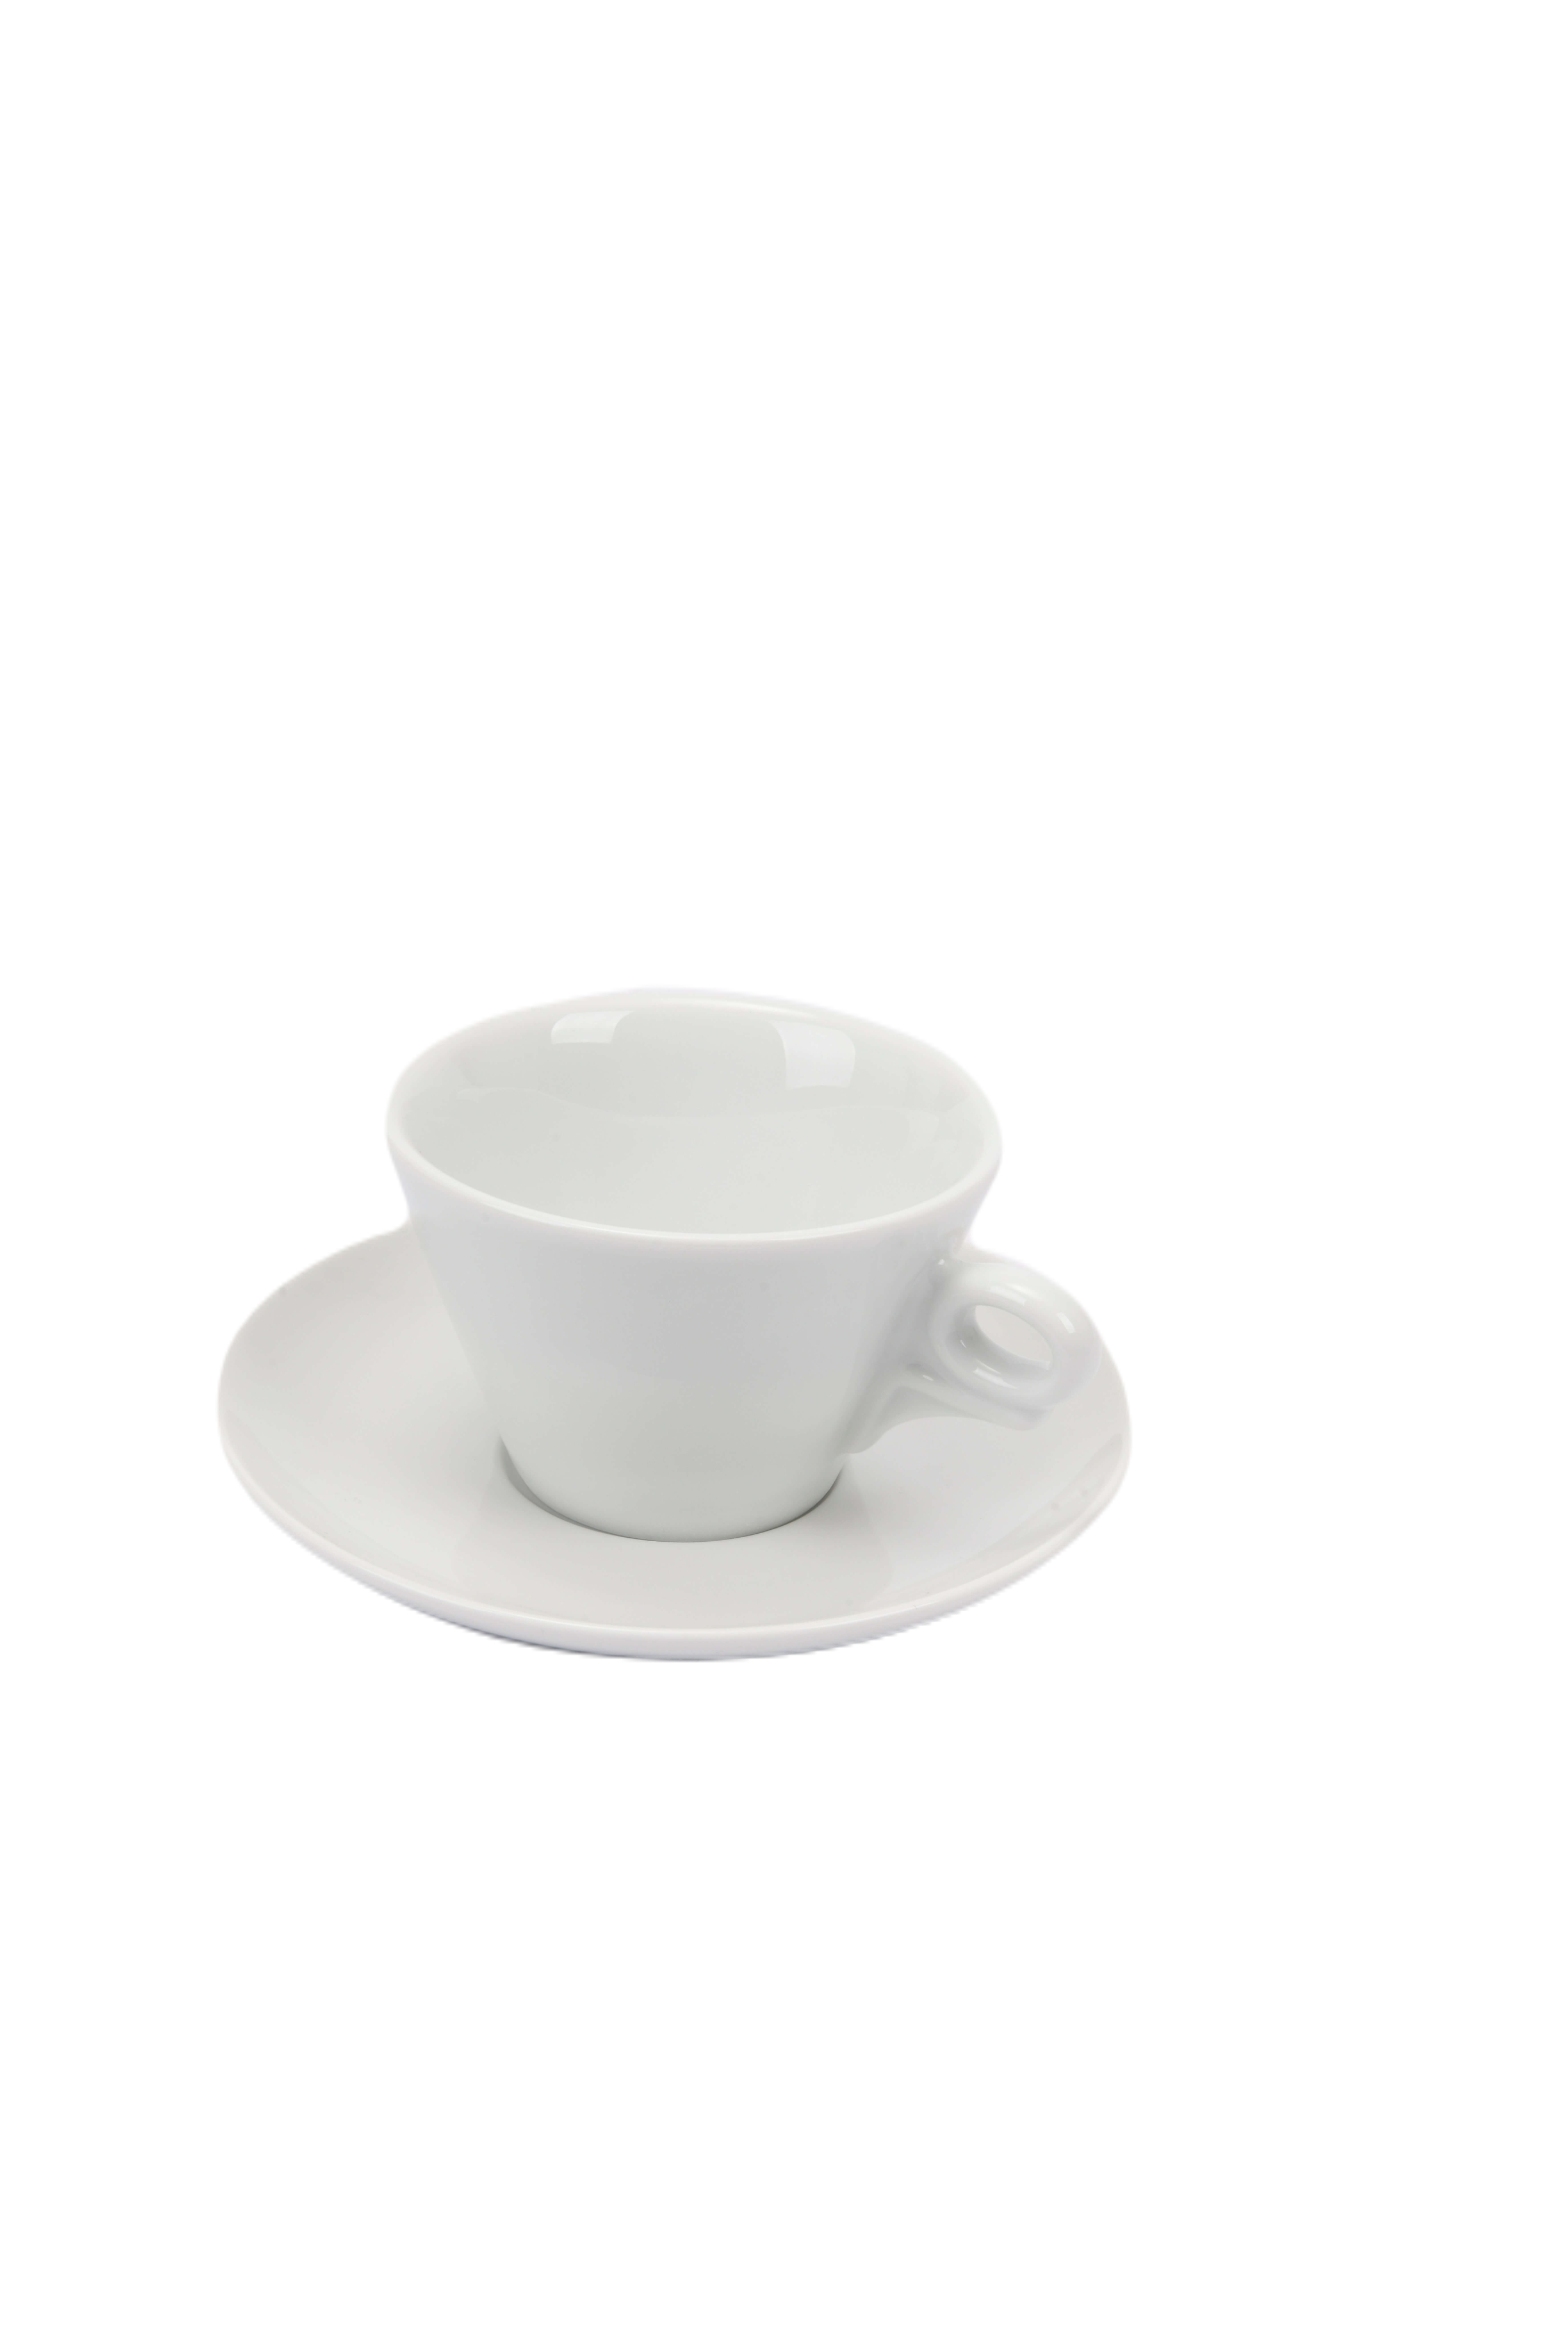 ANCAP Giotto Porselen Latte Fincan ve Tabak Takımı - 270 ml